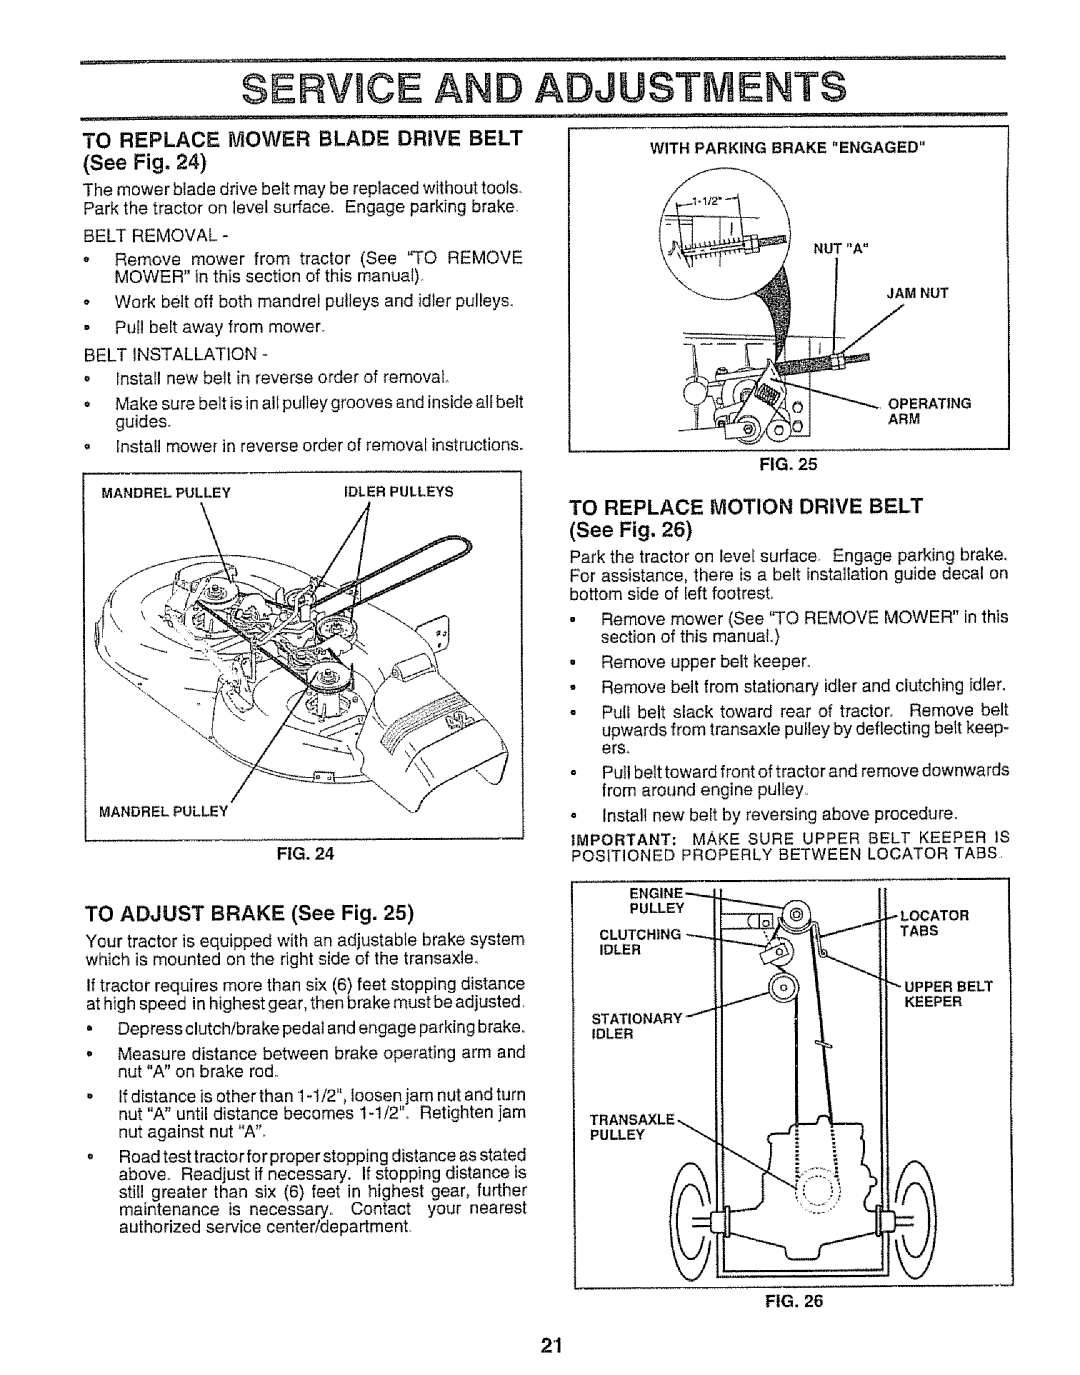 Craftsman 917.252560 manual SERVmCE AN ADJUSTMENTS, TO ADJUST BRAKE See Fig 